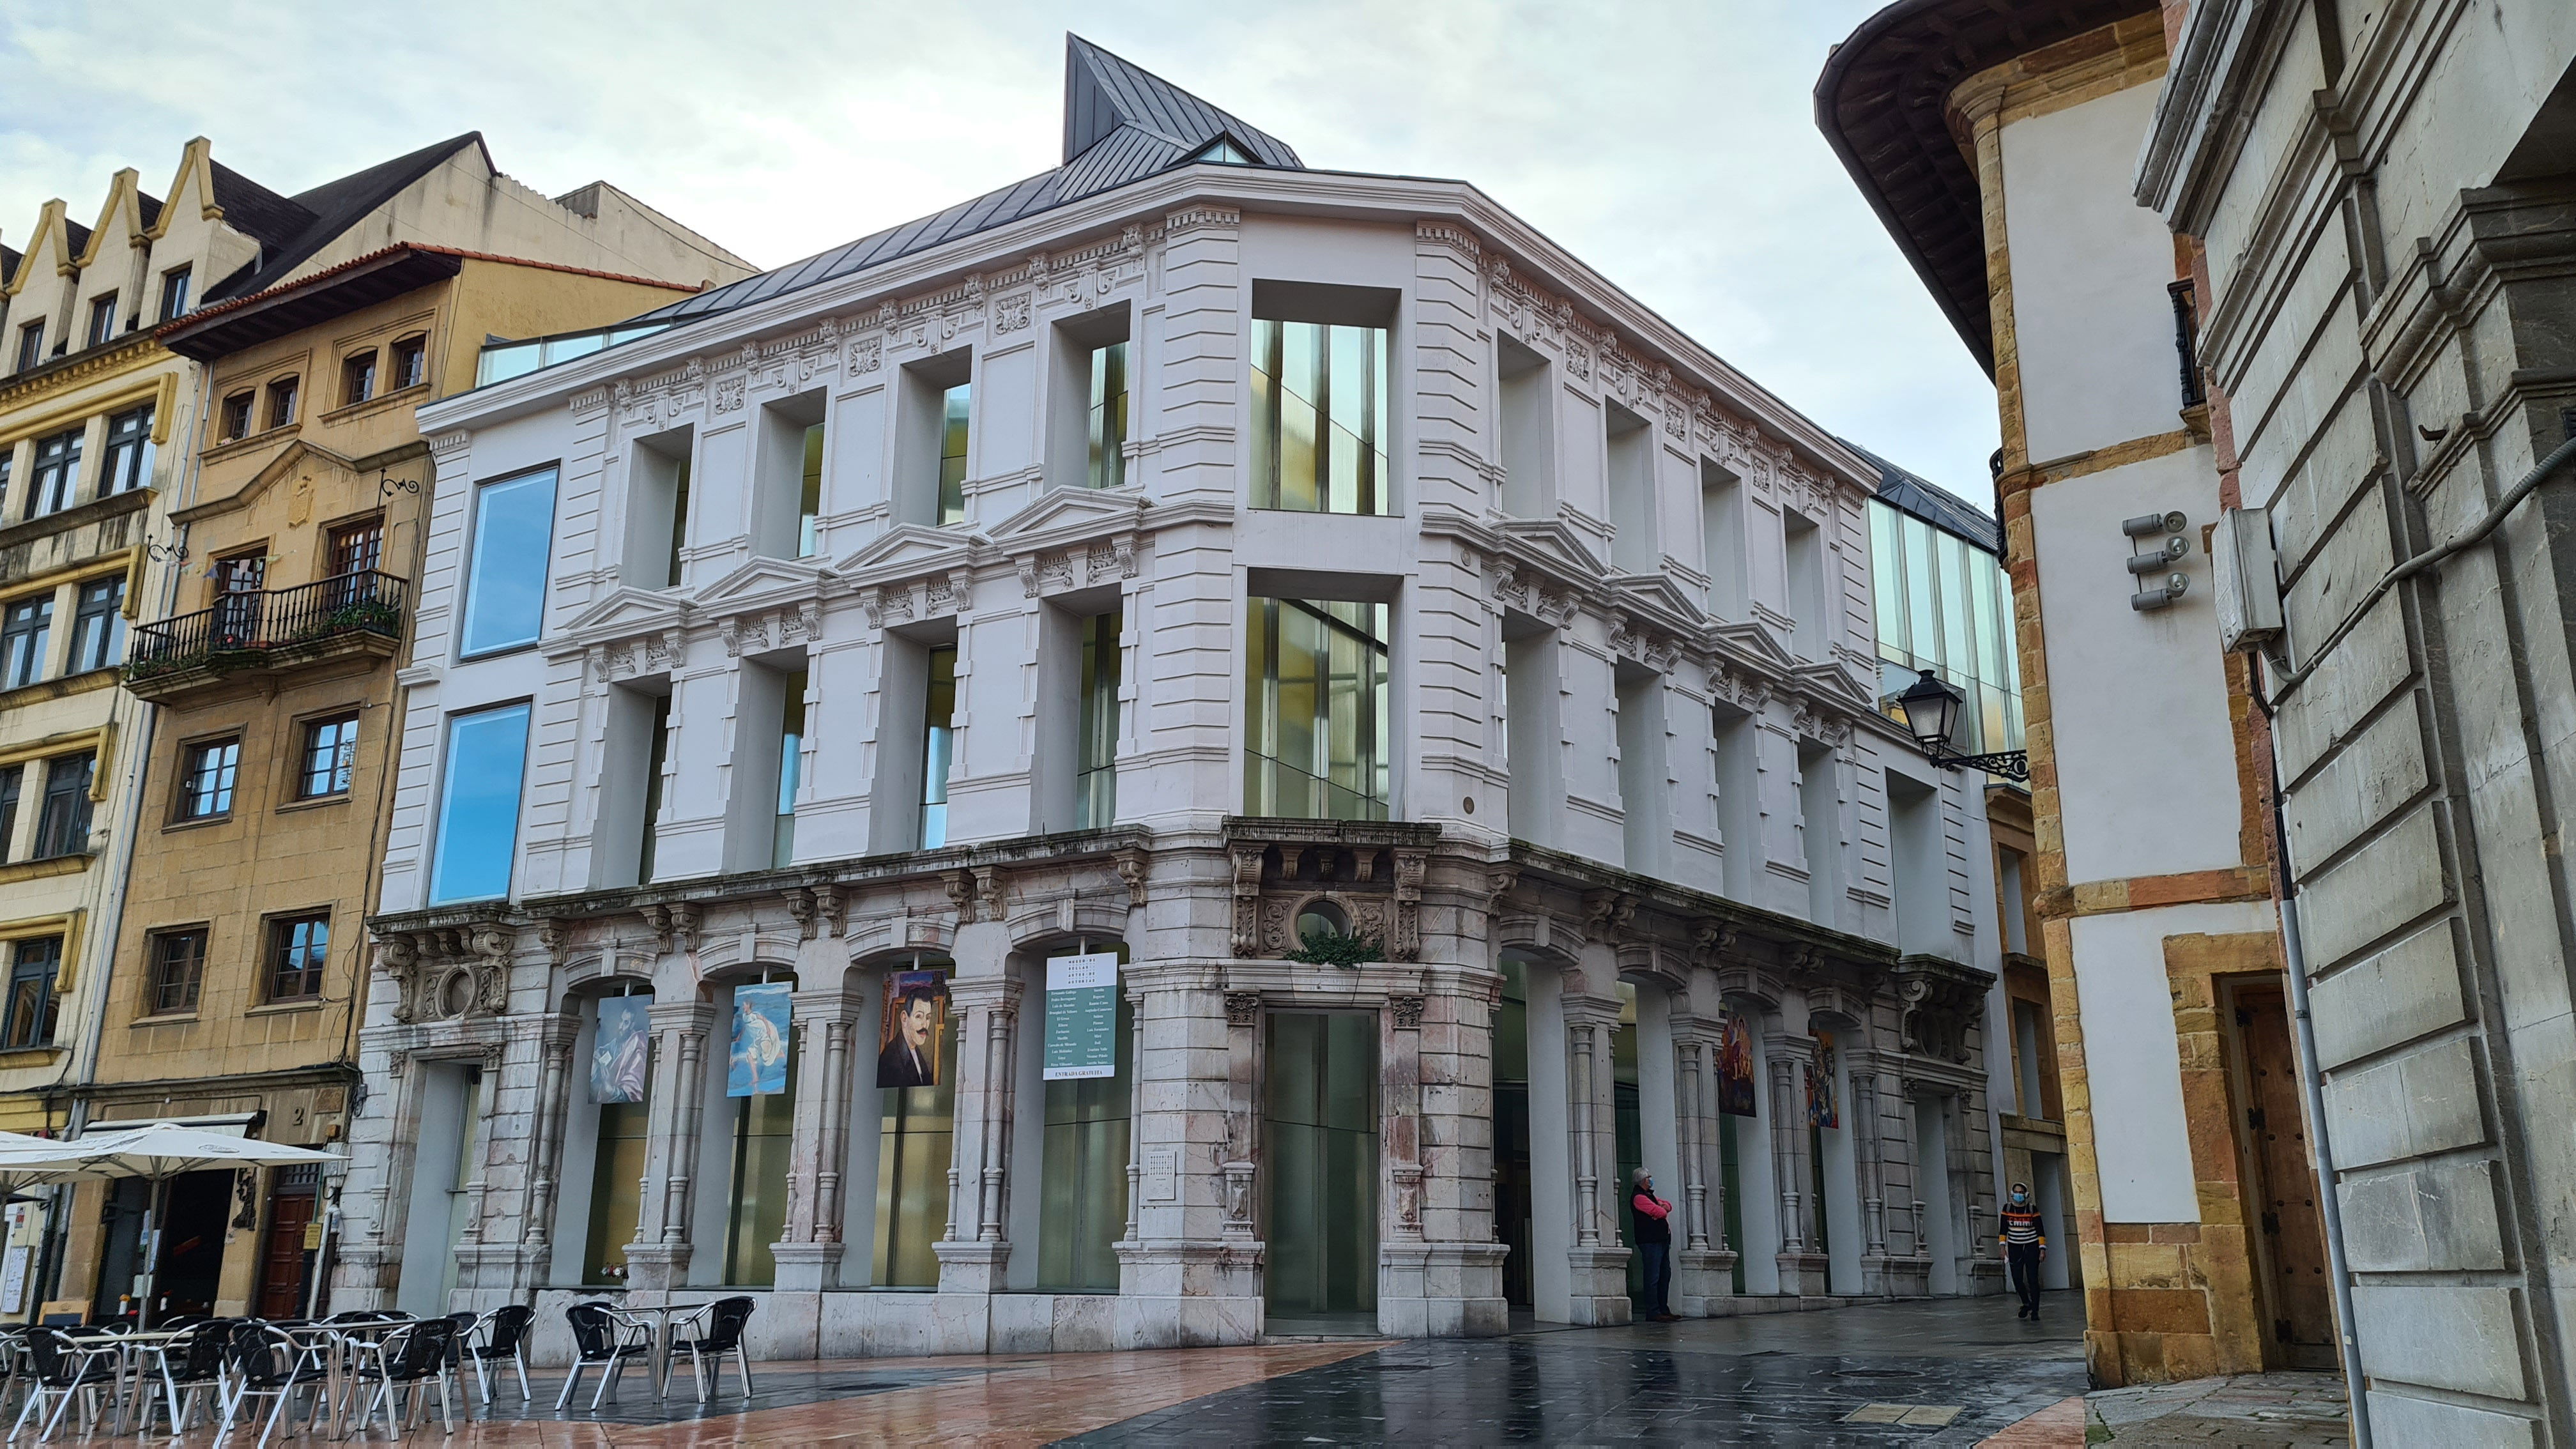 Fotografía de la entrada al museo de Bellas Artes de Oviedo, concretamente a la nueva ampliación donde se observa el edificio de fachada blanca articulada con ventanales y cristaleras que aportan gran luminosidad.